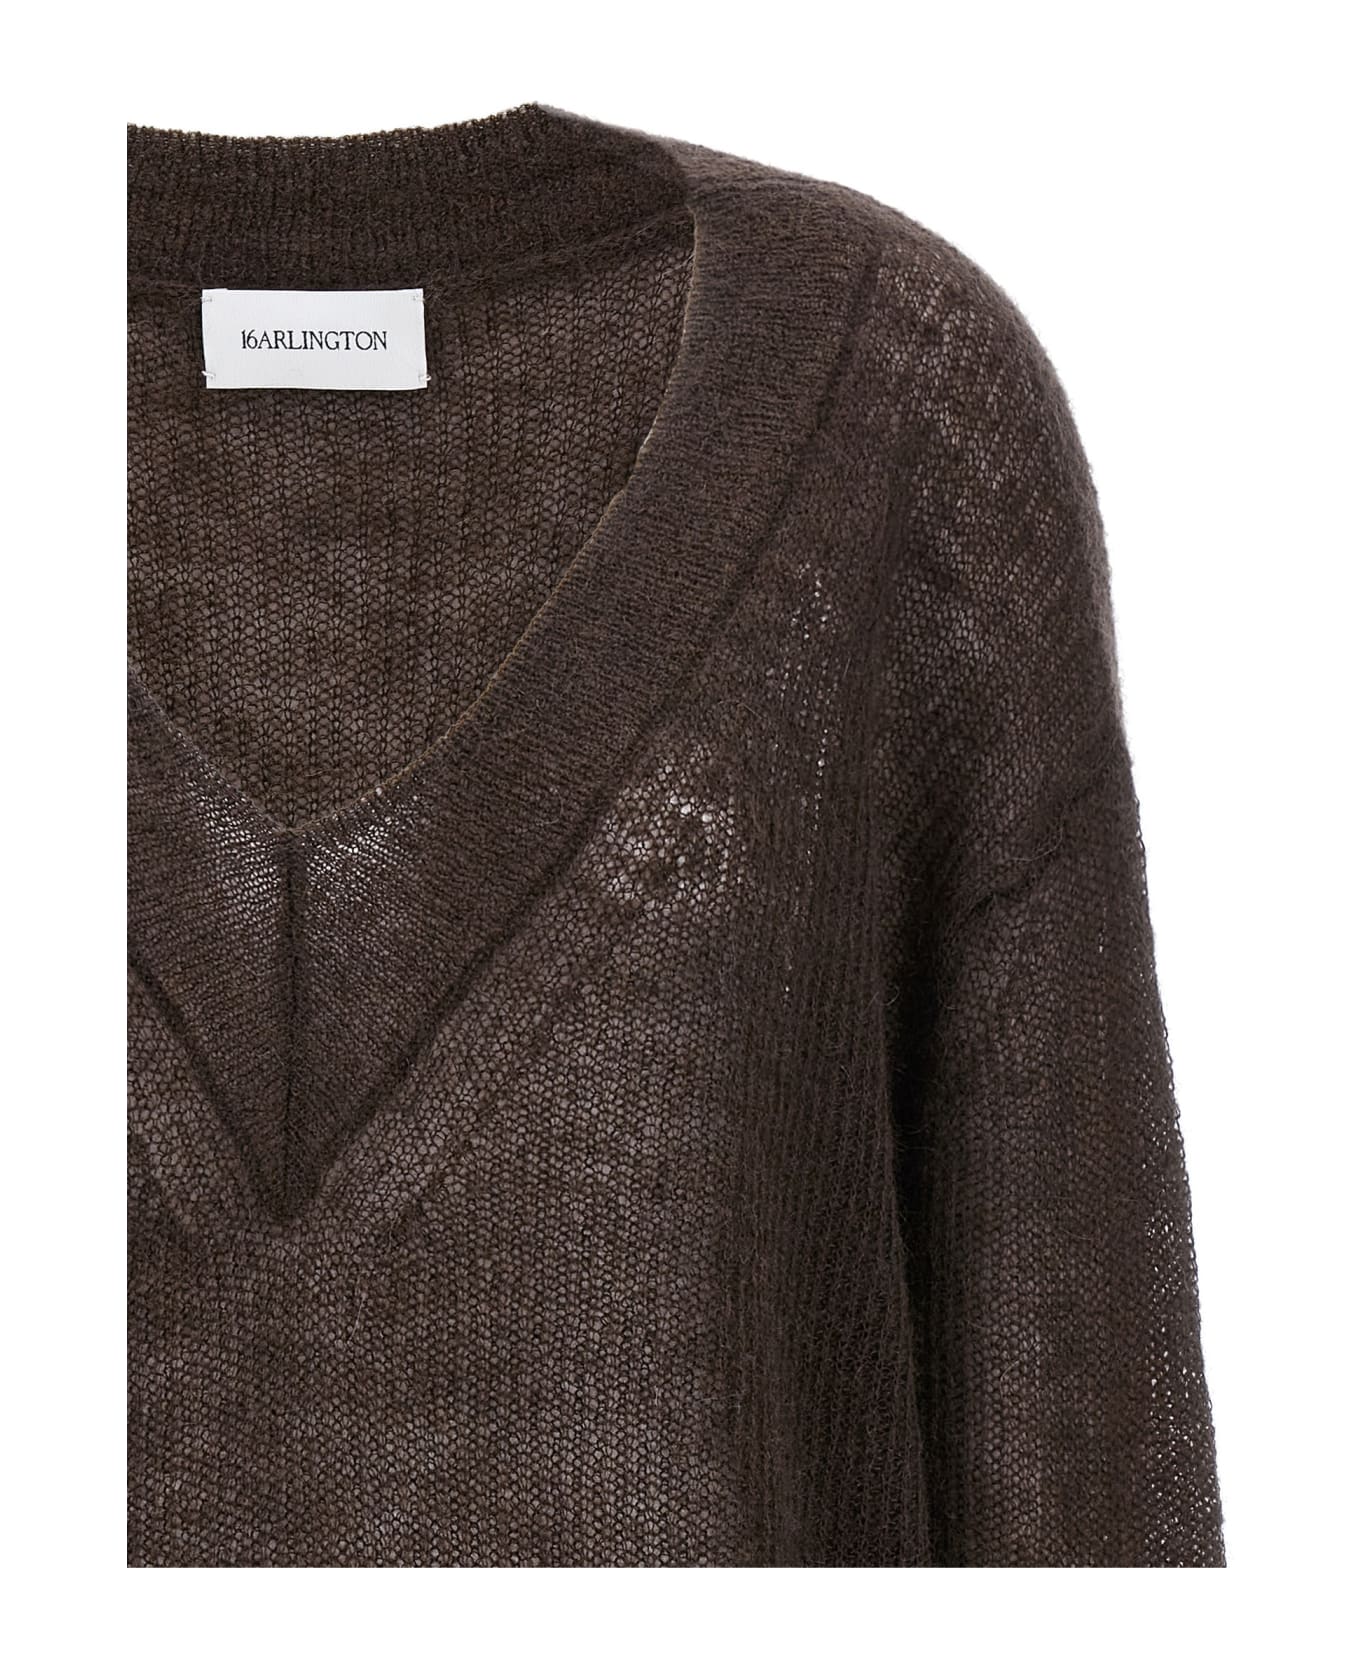 16arlington 'cleora' Sweater - Brown